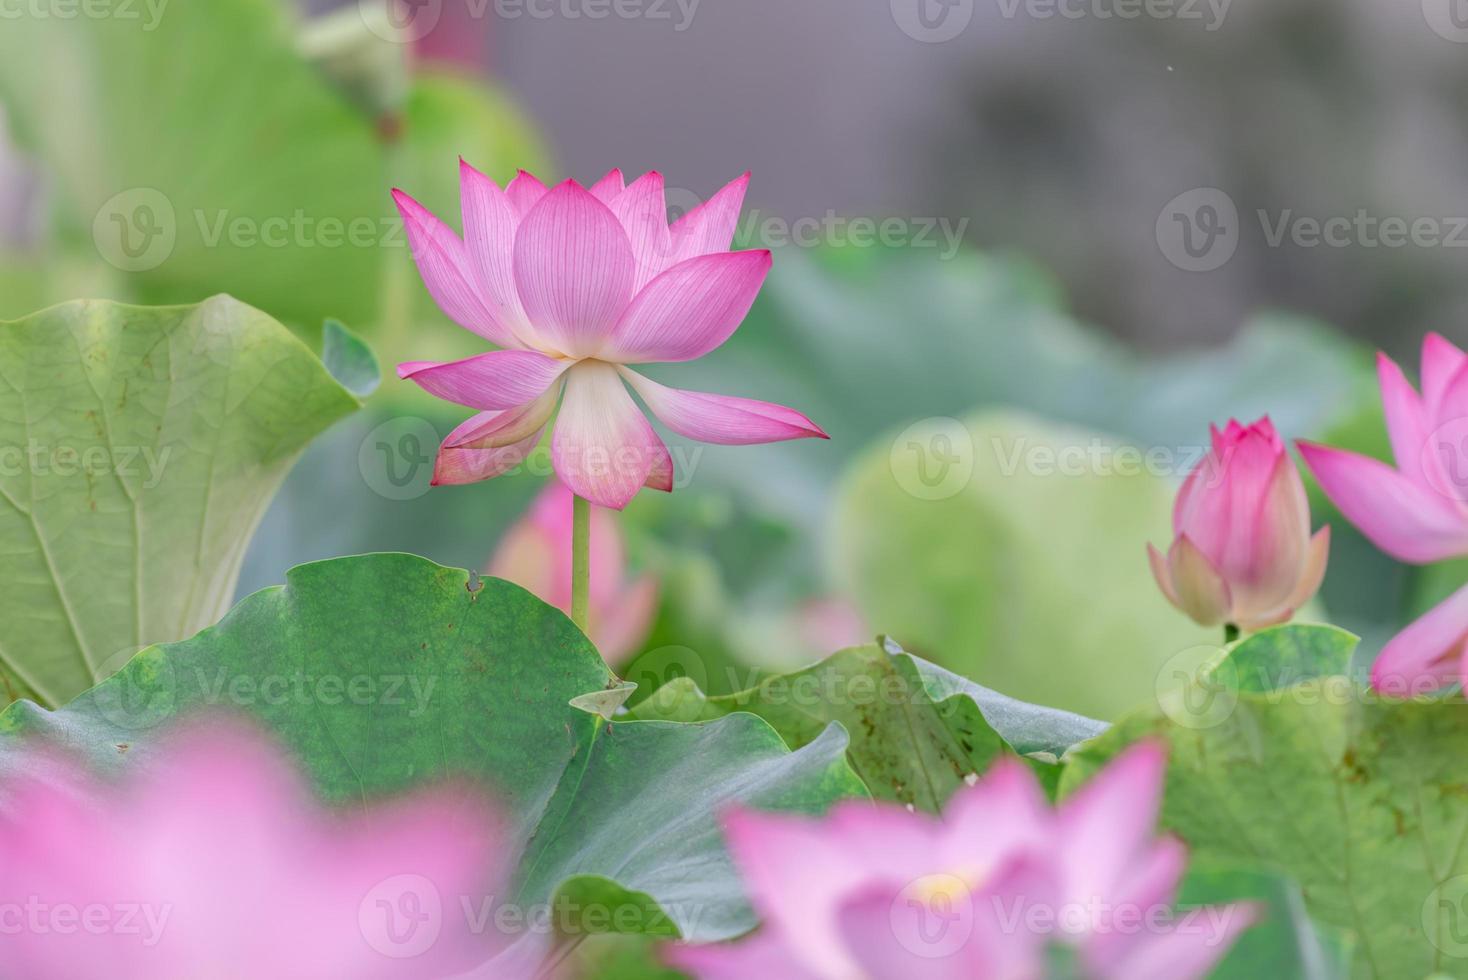 il y a beaucoup de fleurs de lotus roses dans l'étang de lotus photo